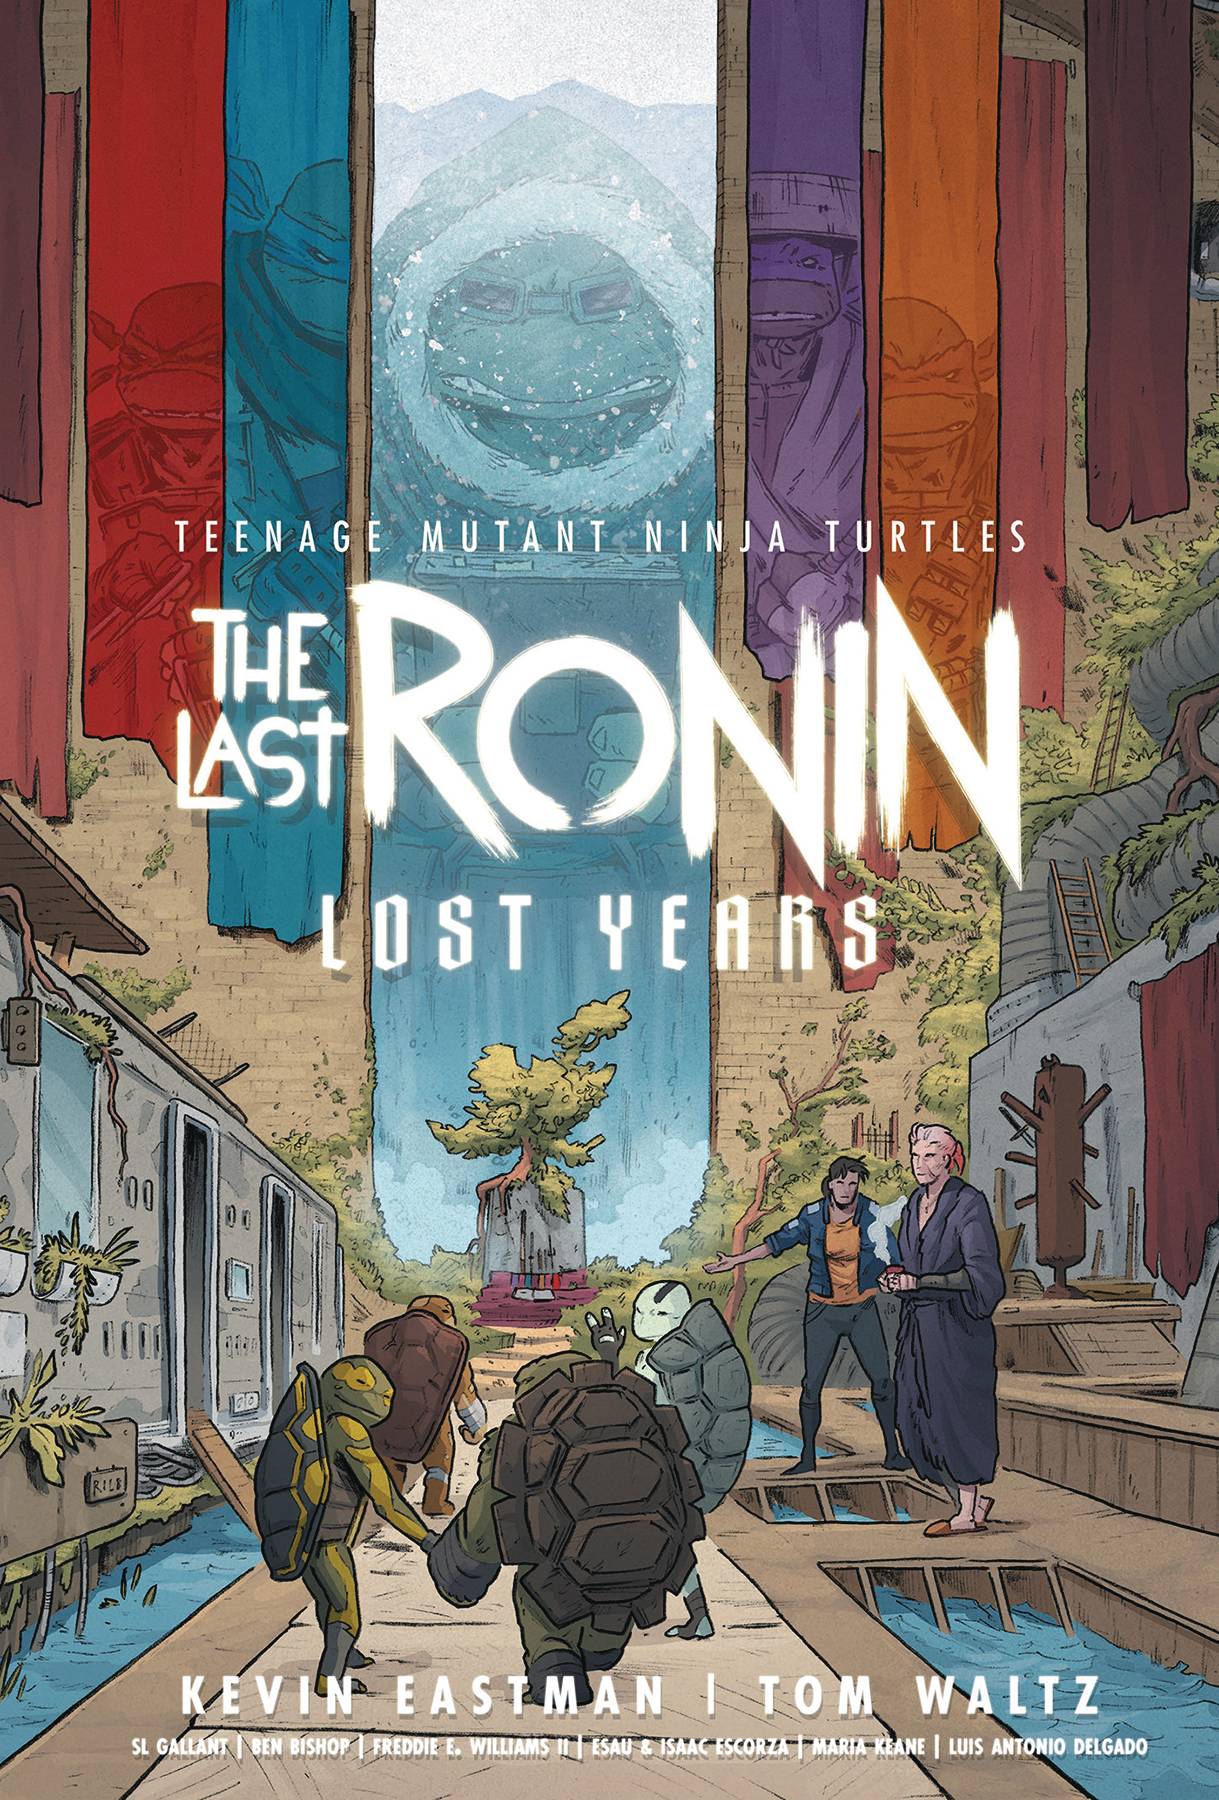 Teenage Mutant Ninja Turtles: The Last Ronin - The Lost Years h/c